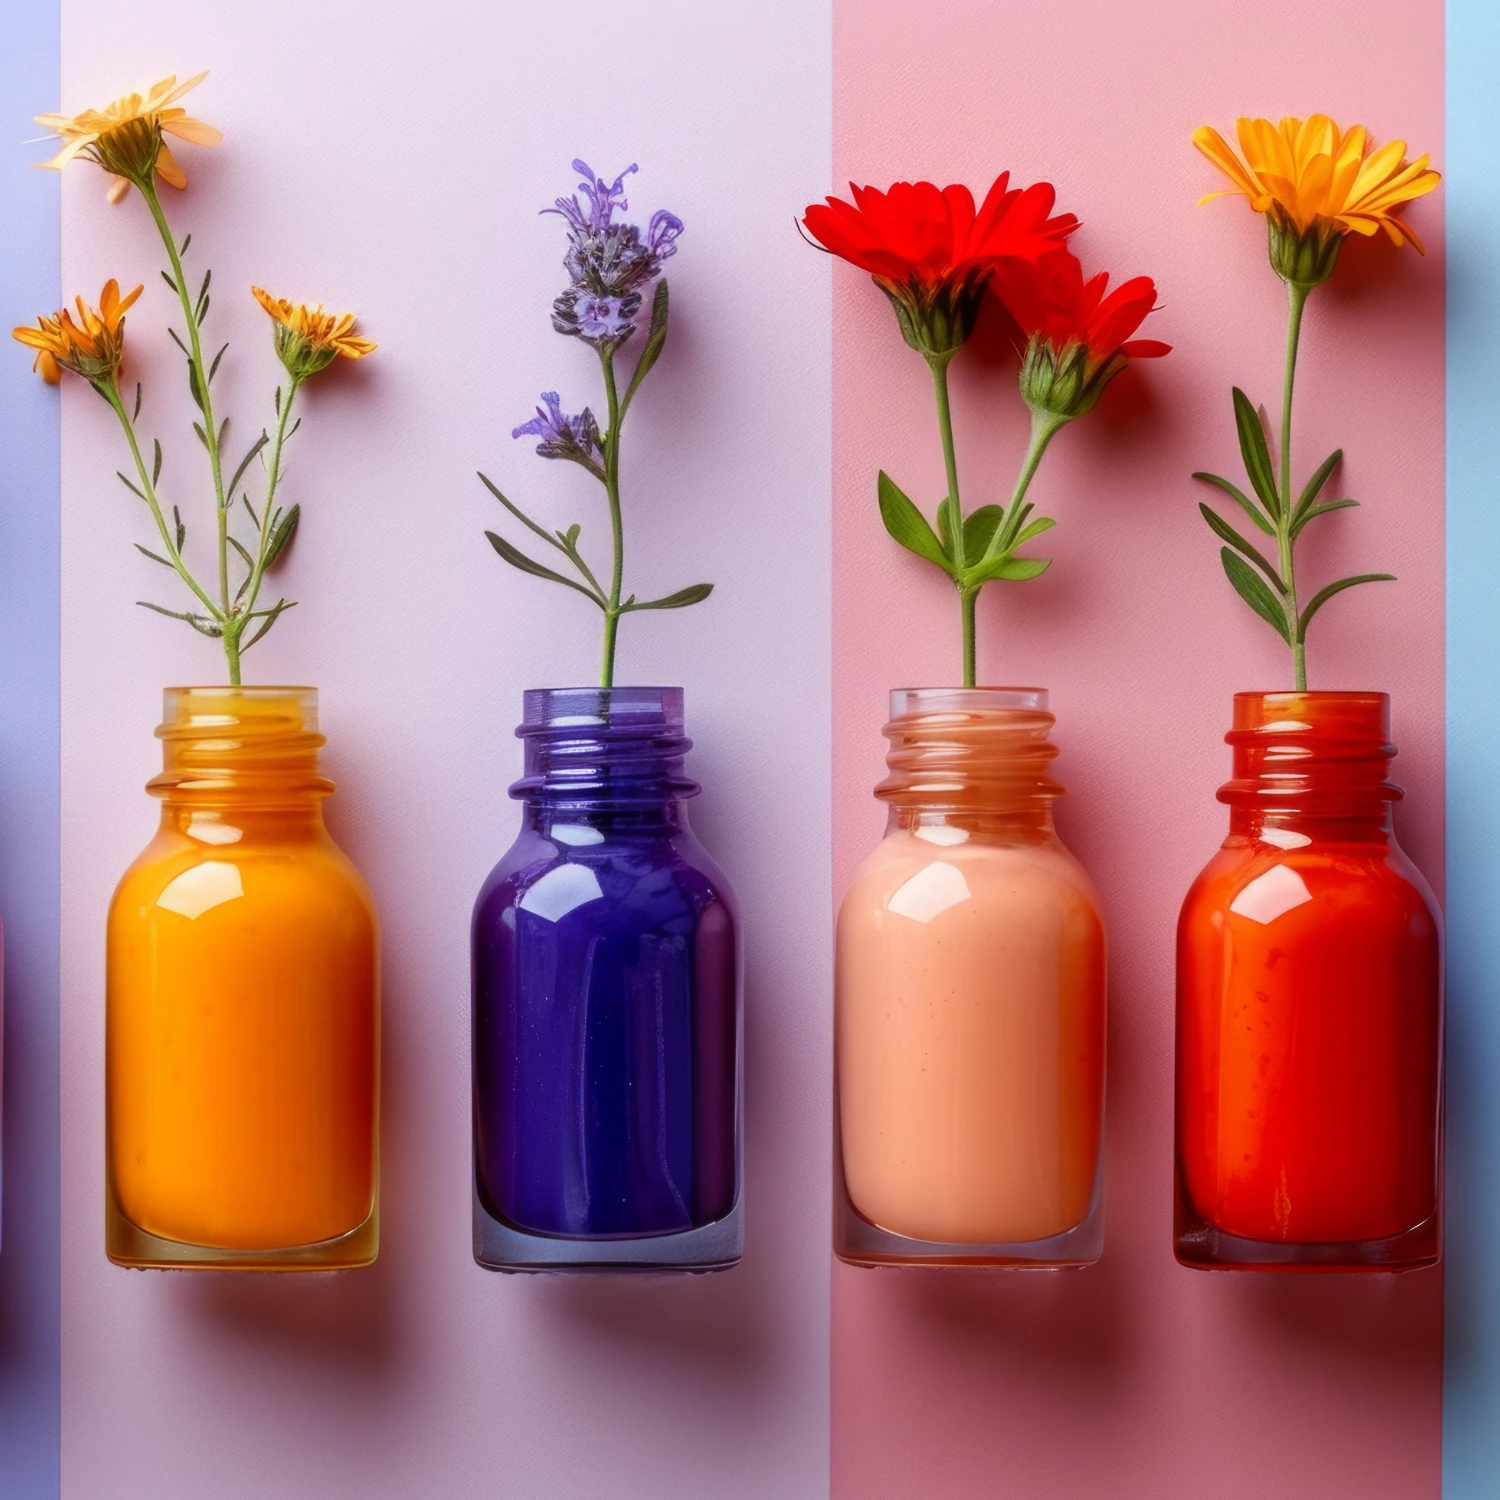 Farbige Flaschen mit verschiedenen Blumen und Pflanzen